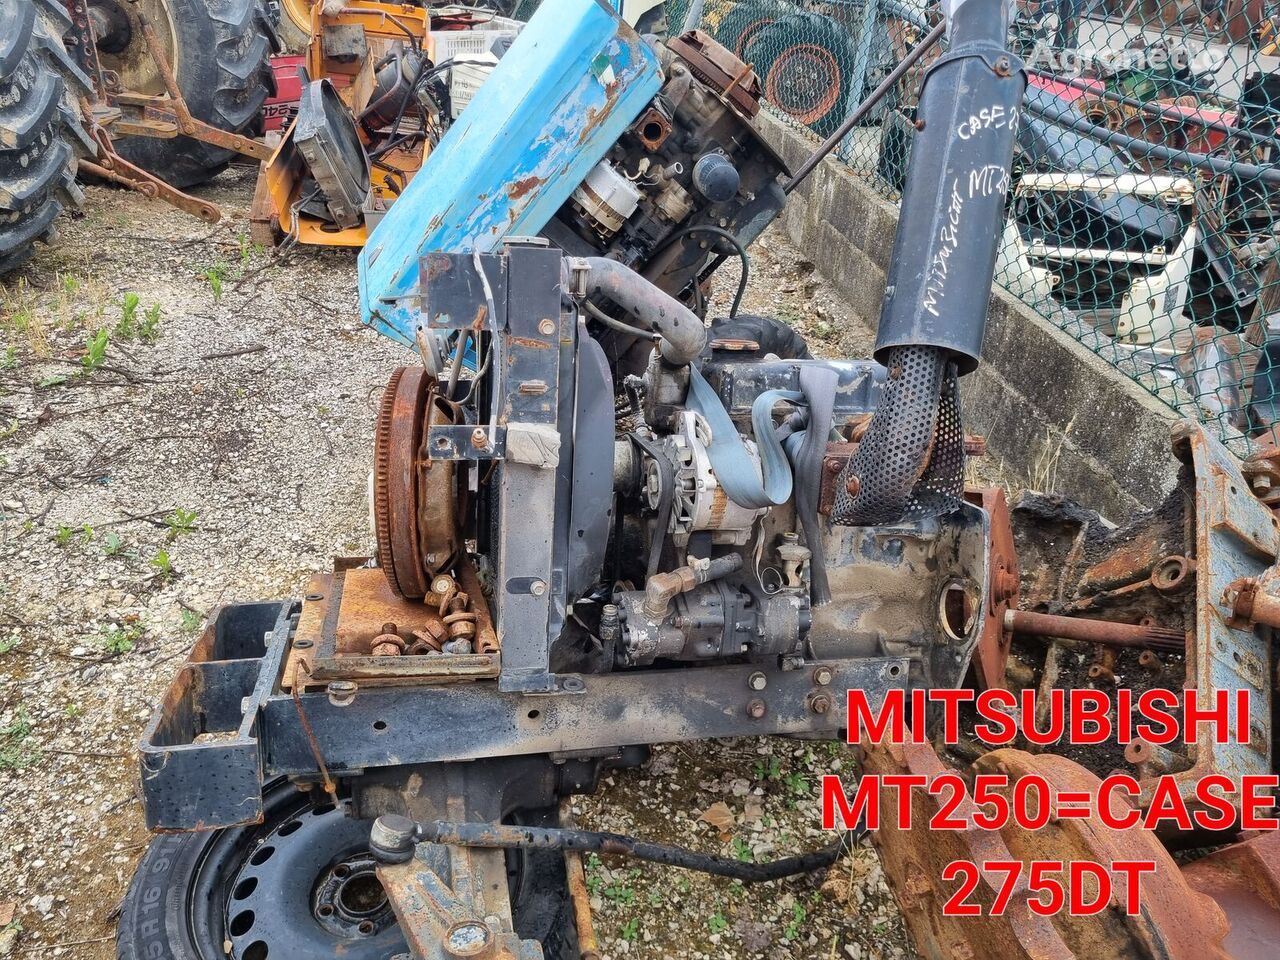 Mitsubishi MT250=CASE 275 PARA PEÇAS  wheel tractor for parts